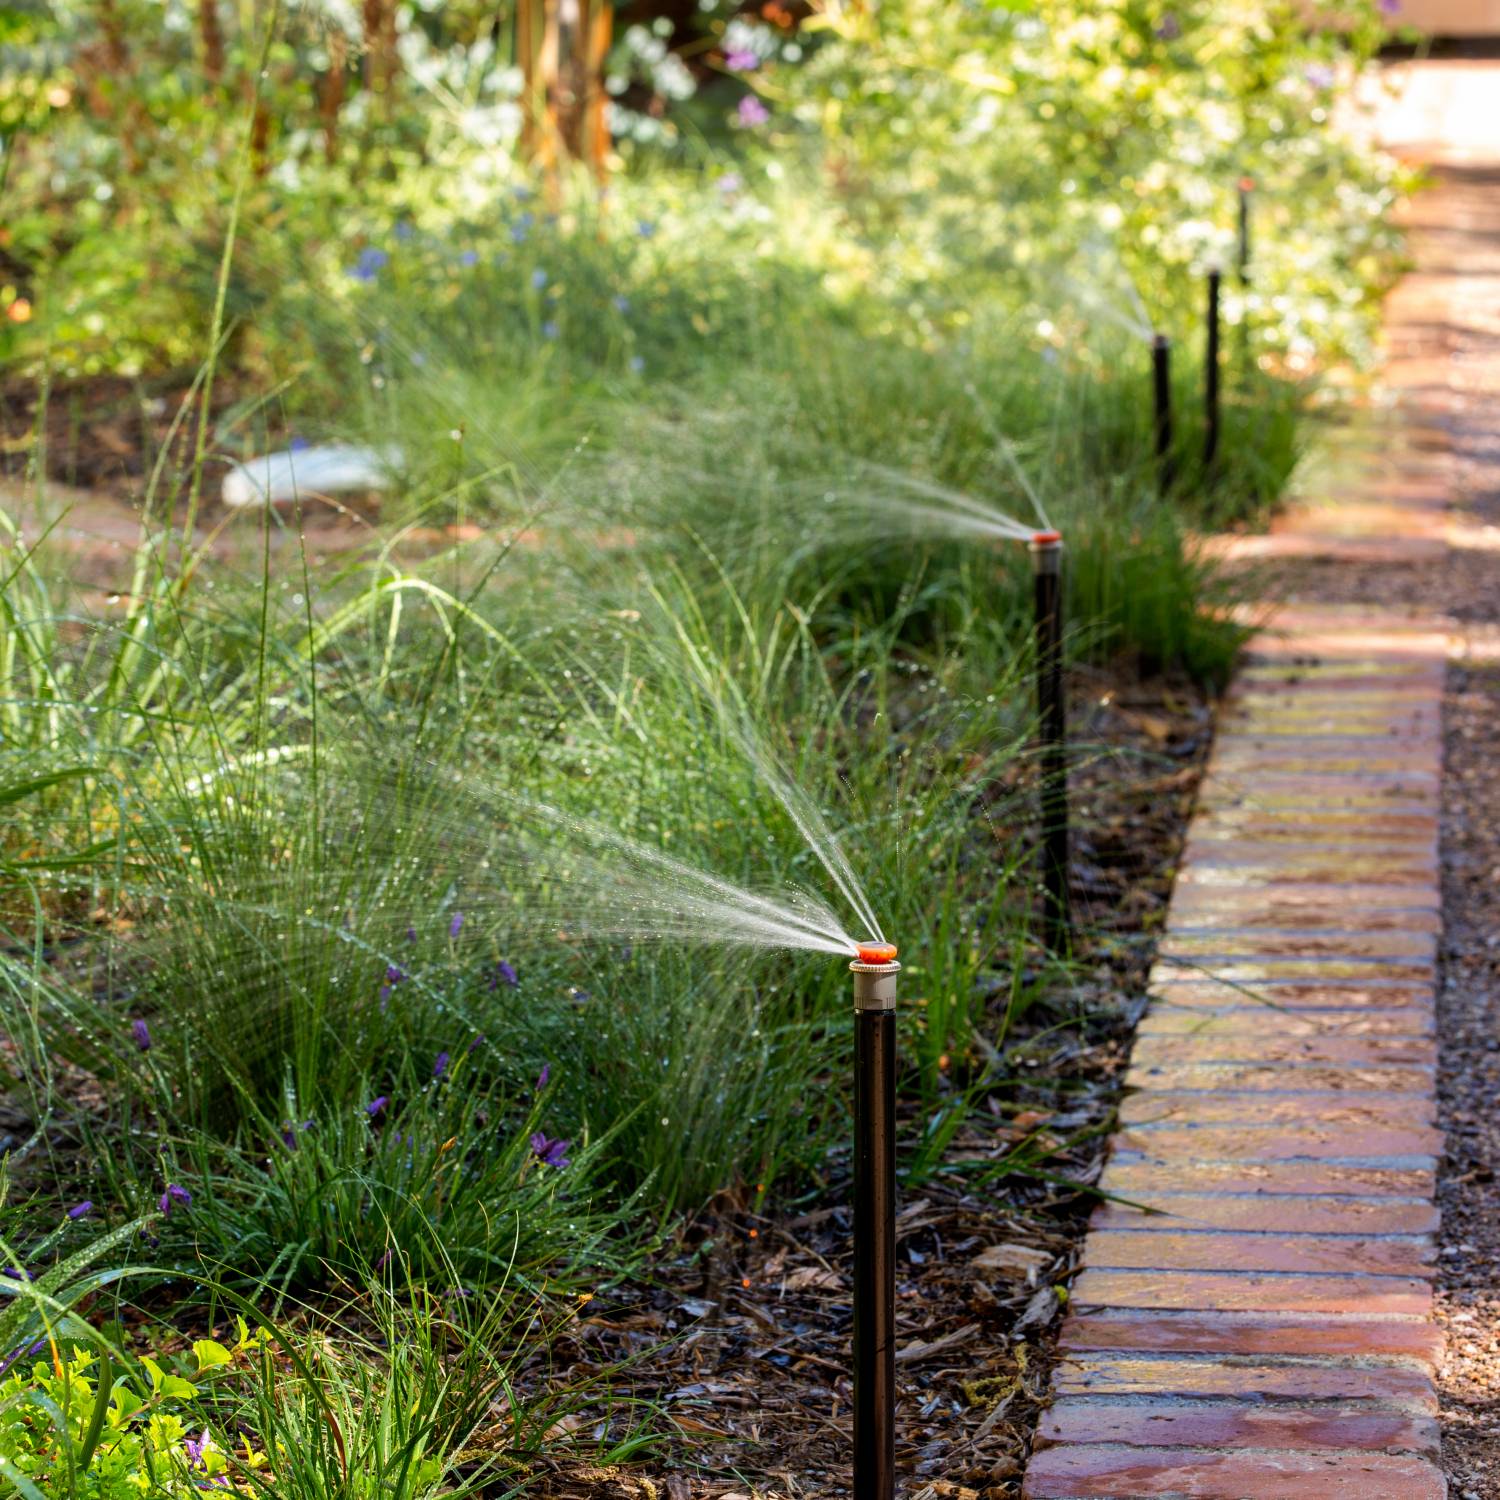 Sprinklers watering a plant border